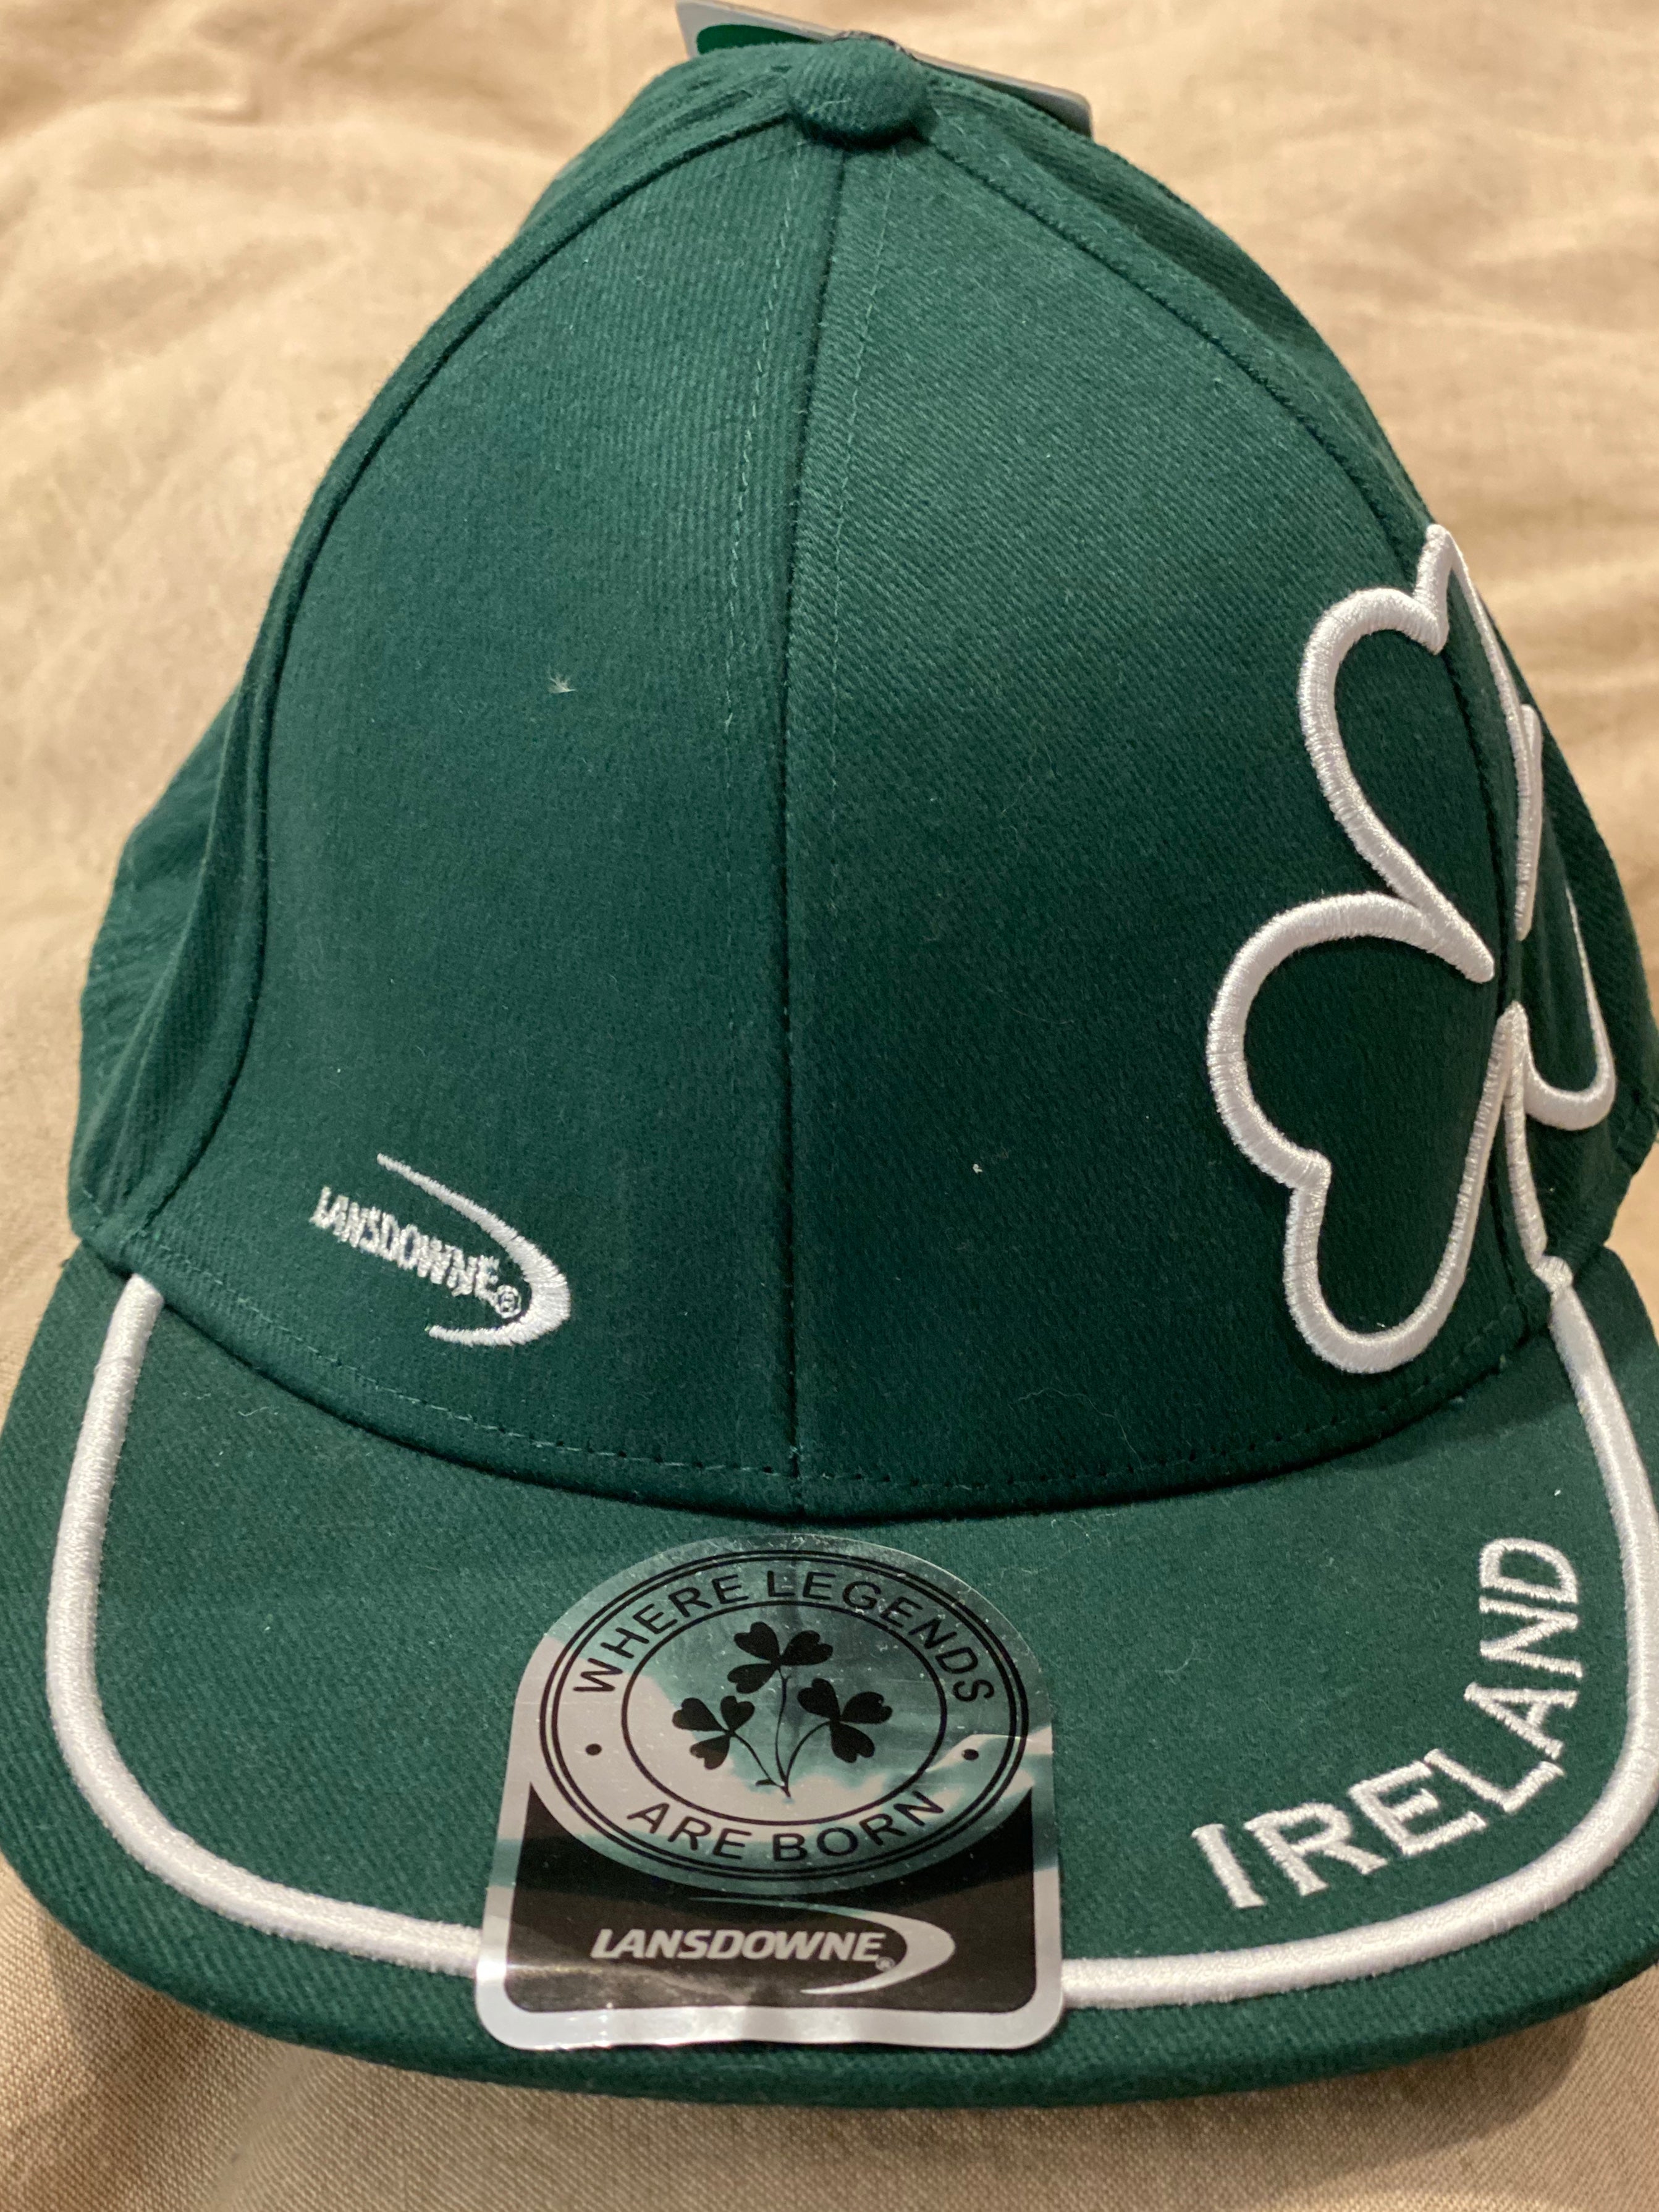 Ireland shamrock cap